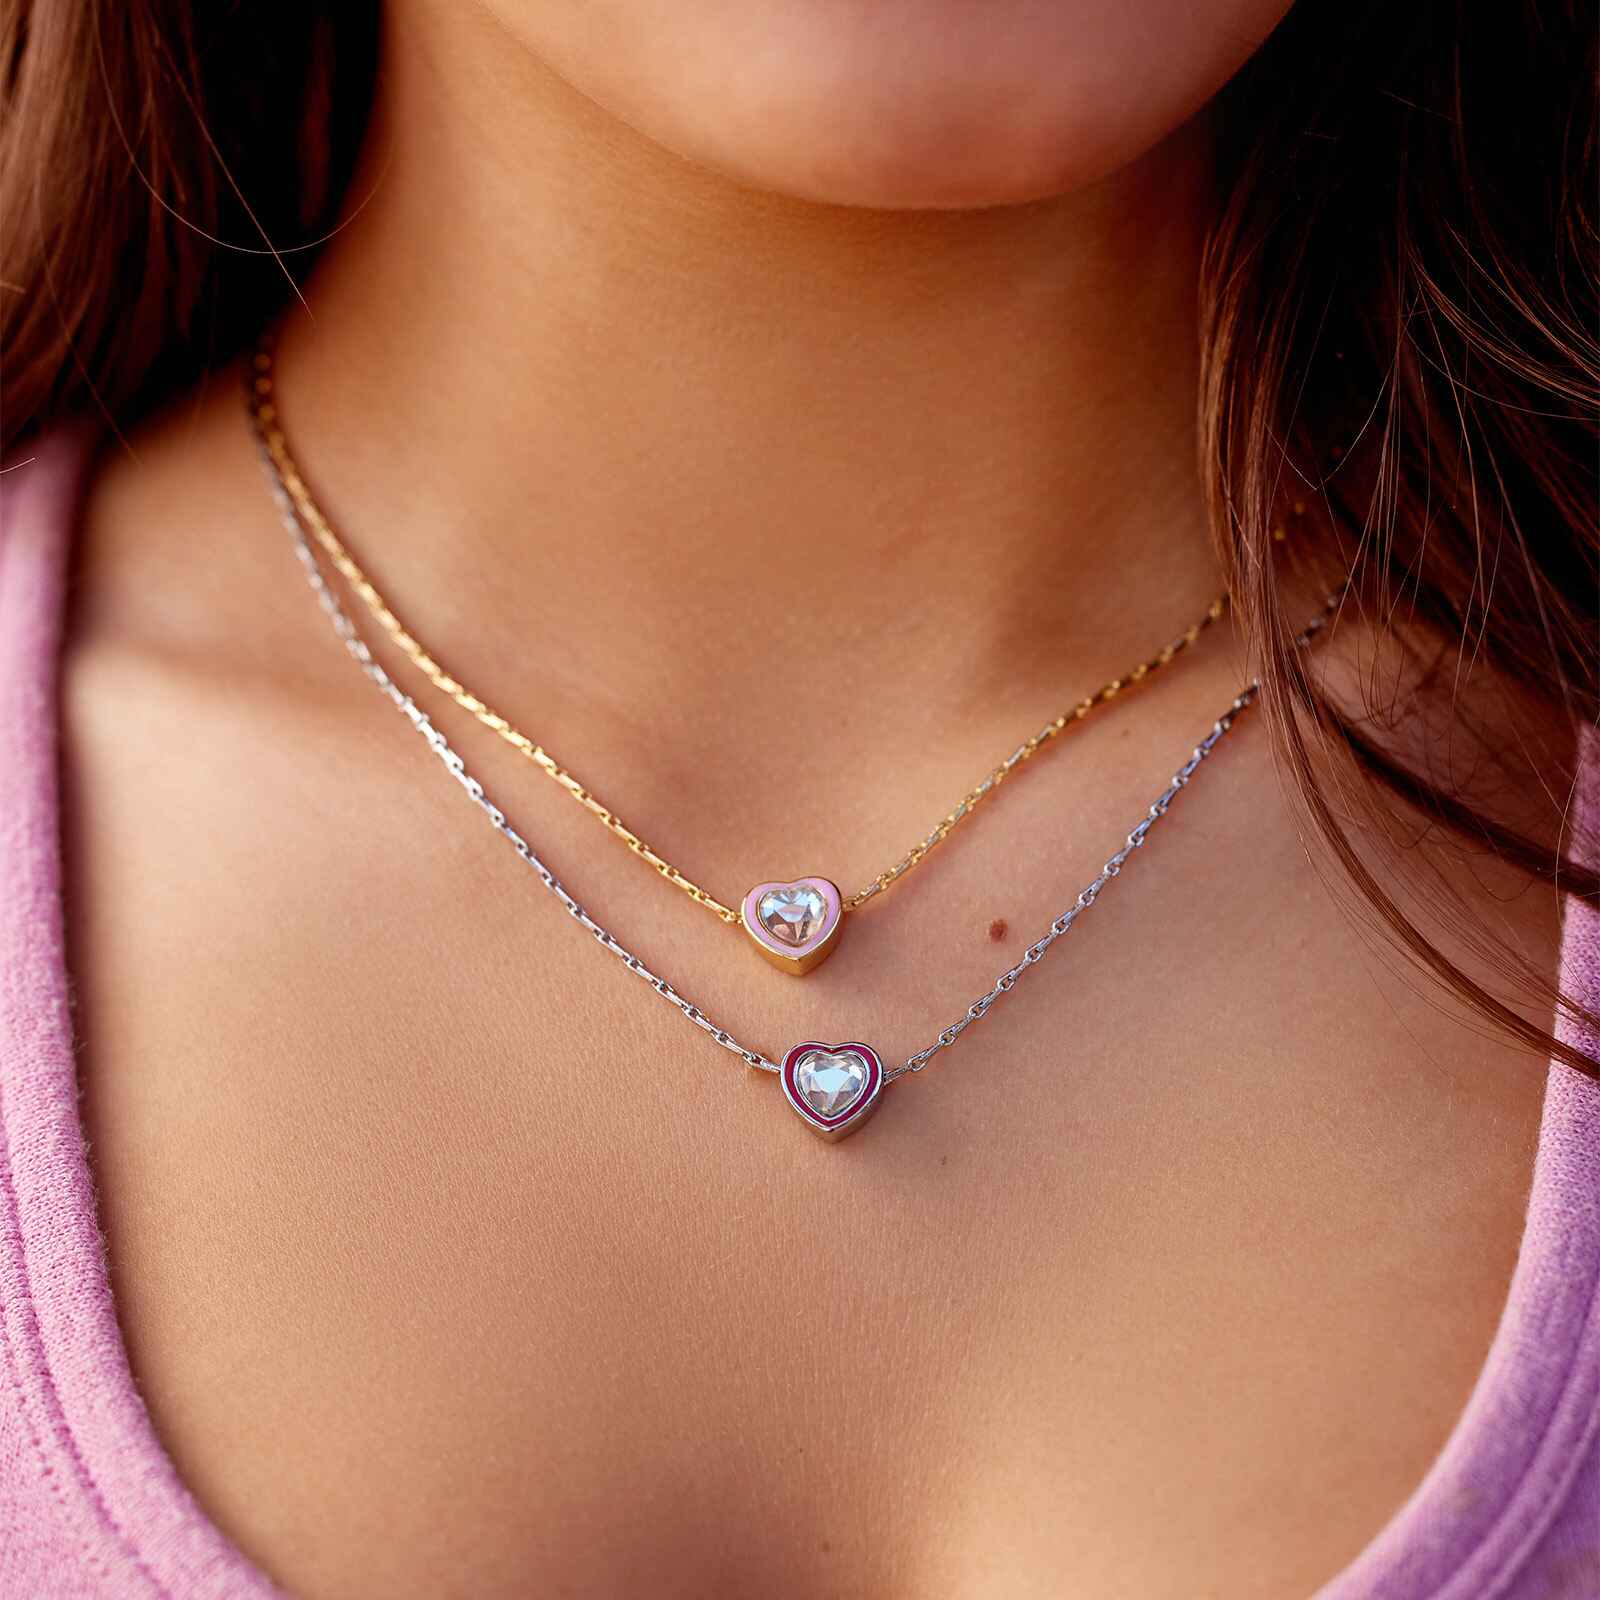 The all seeing heart illuminati pendant necklace | sillyshinydiamonds